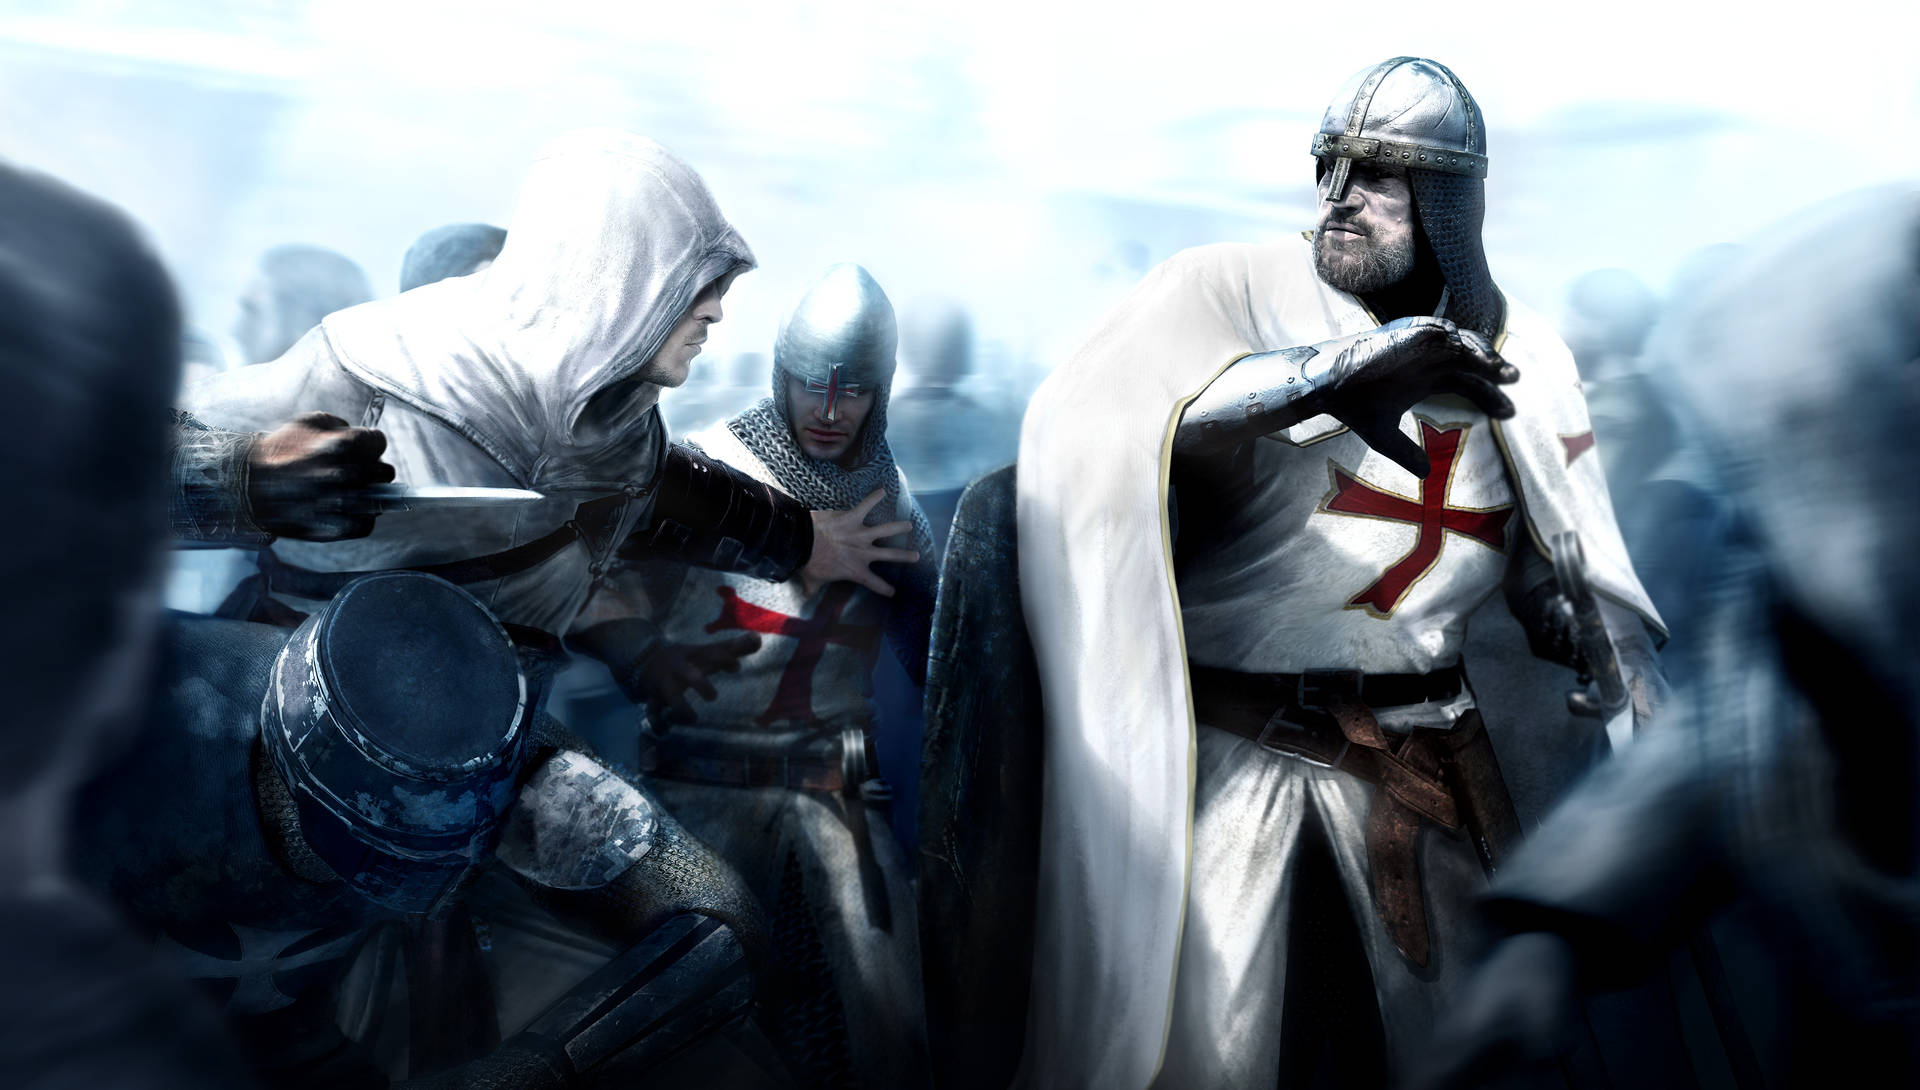 Assassin's Creed Templar Knights